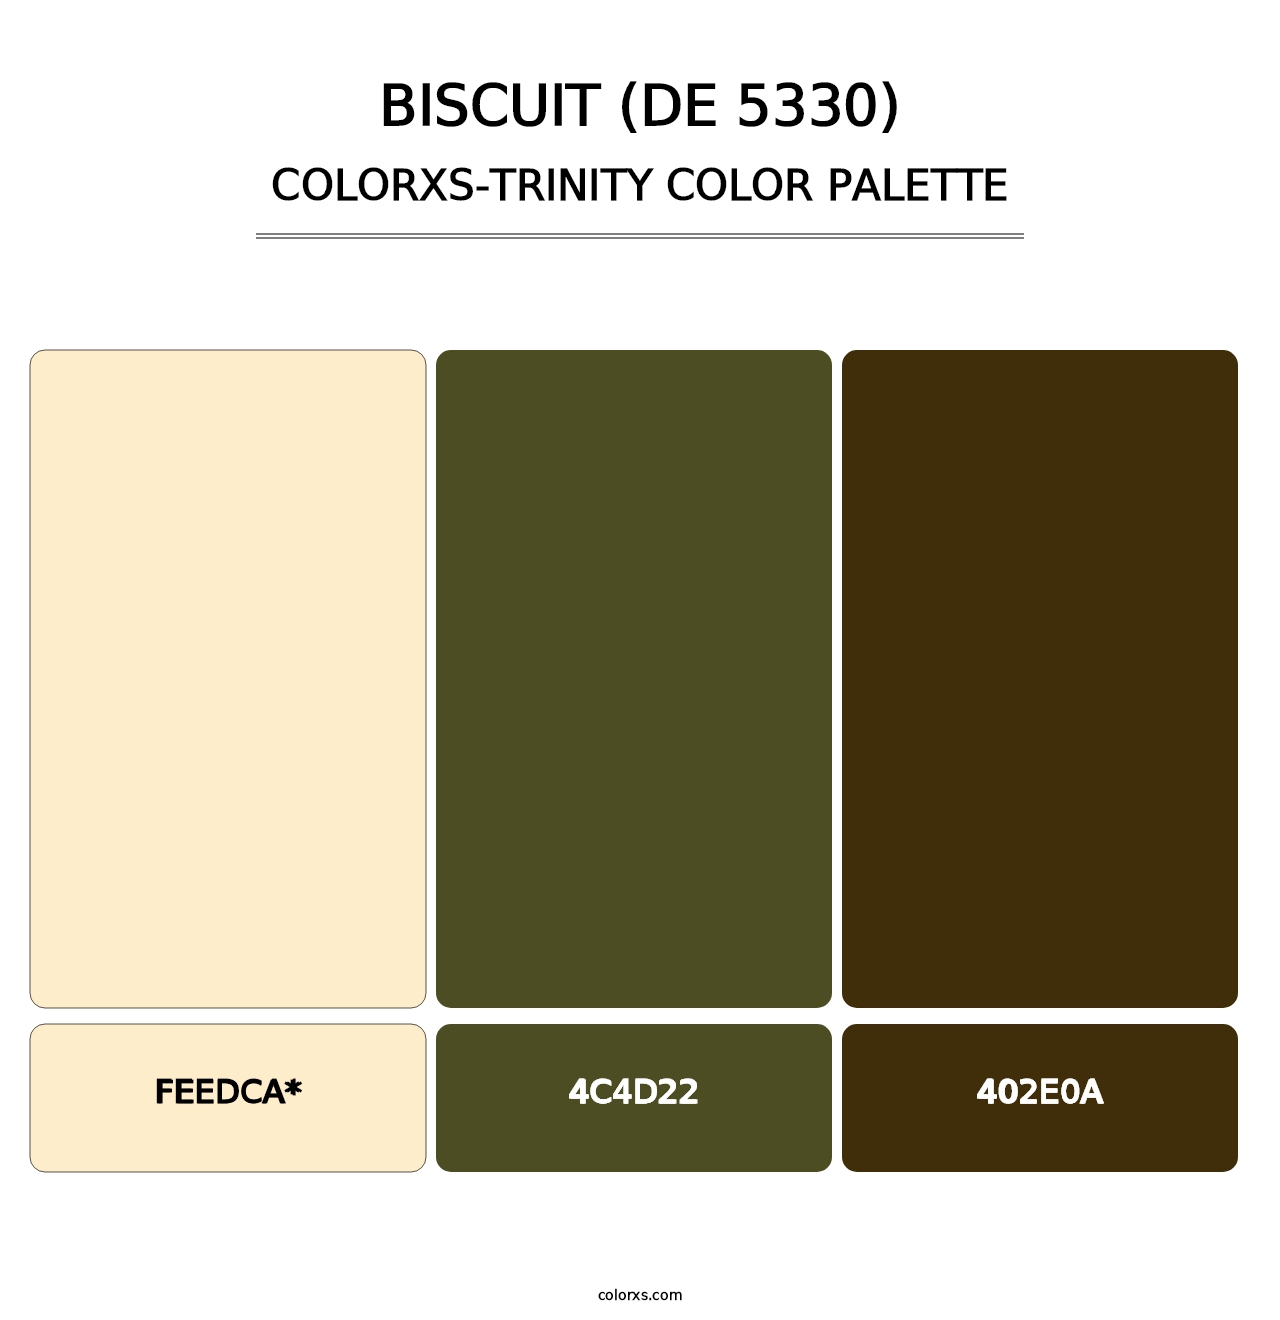 Biscuit (DE 5330) - Colorxs Trinity Palette